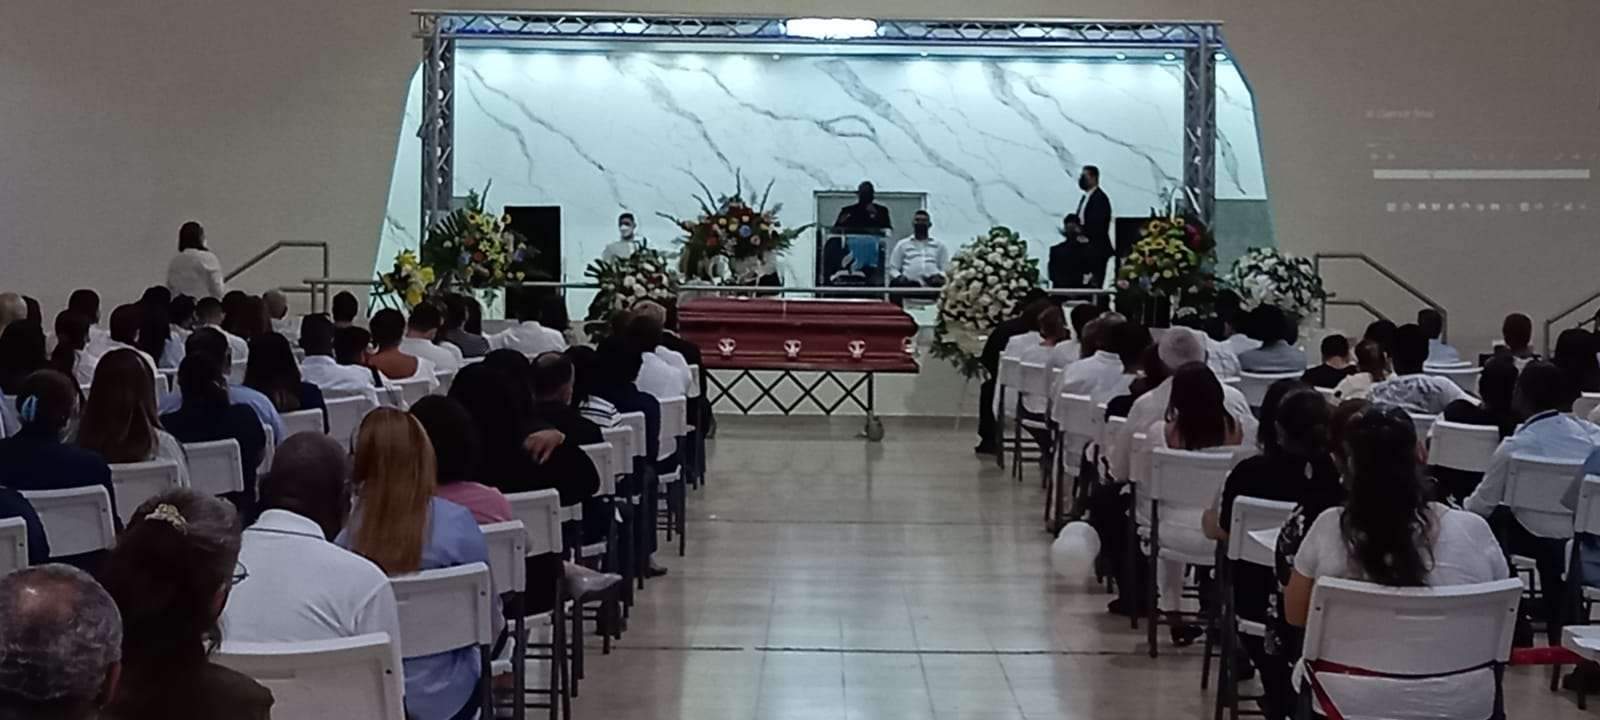 El féretro con los restos mortales de Agustín Lara estaba situado en el centro del  en auditorio del colegio adventista de Panamá. Foto: Alexander Santamaría 